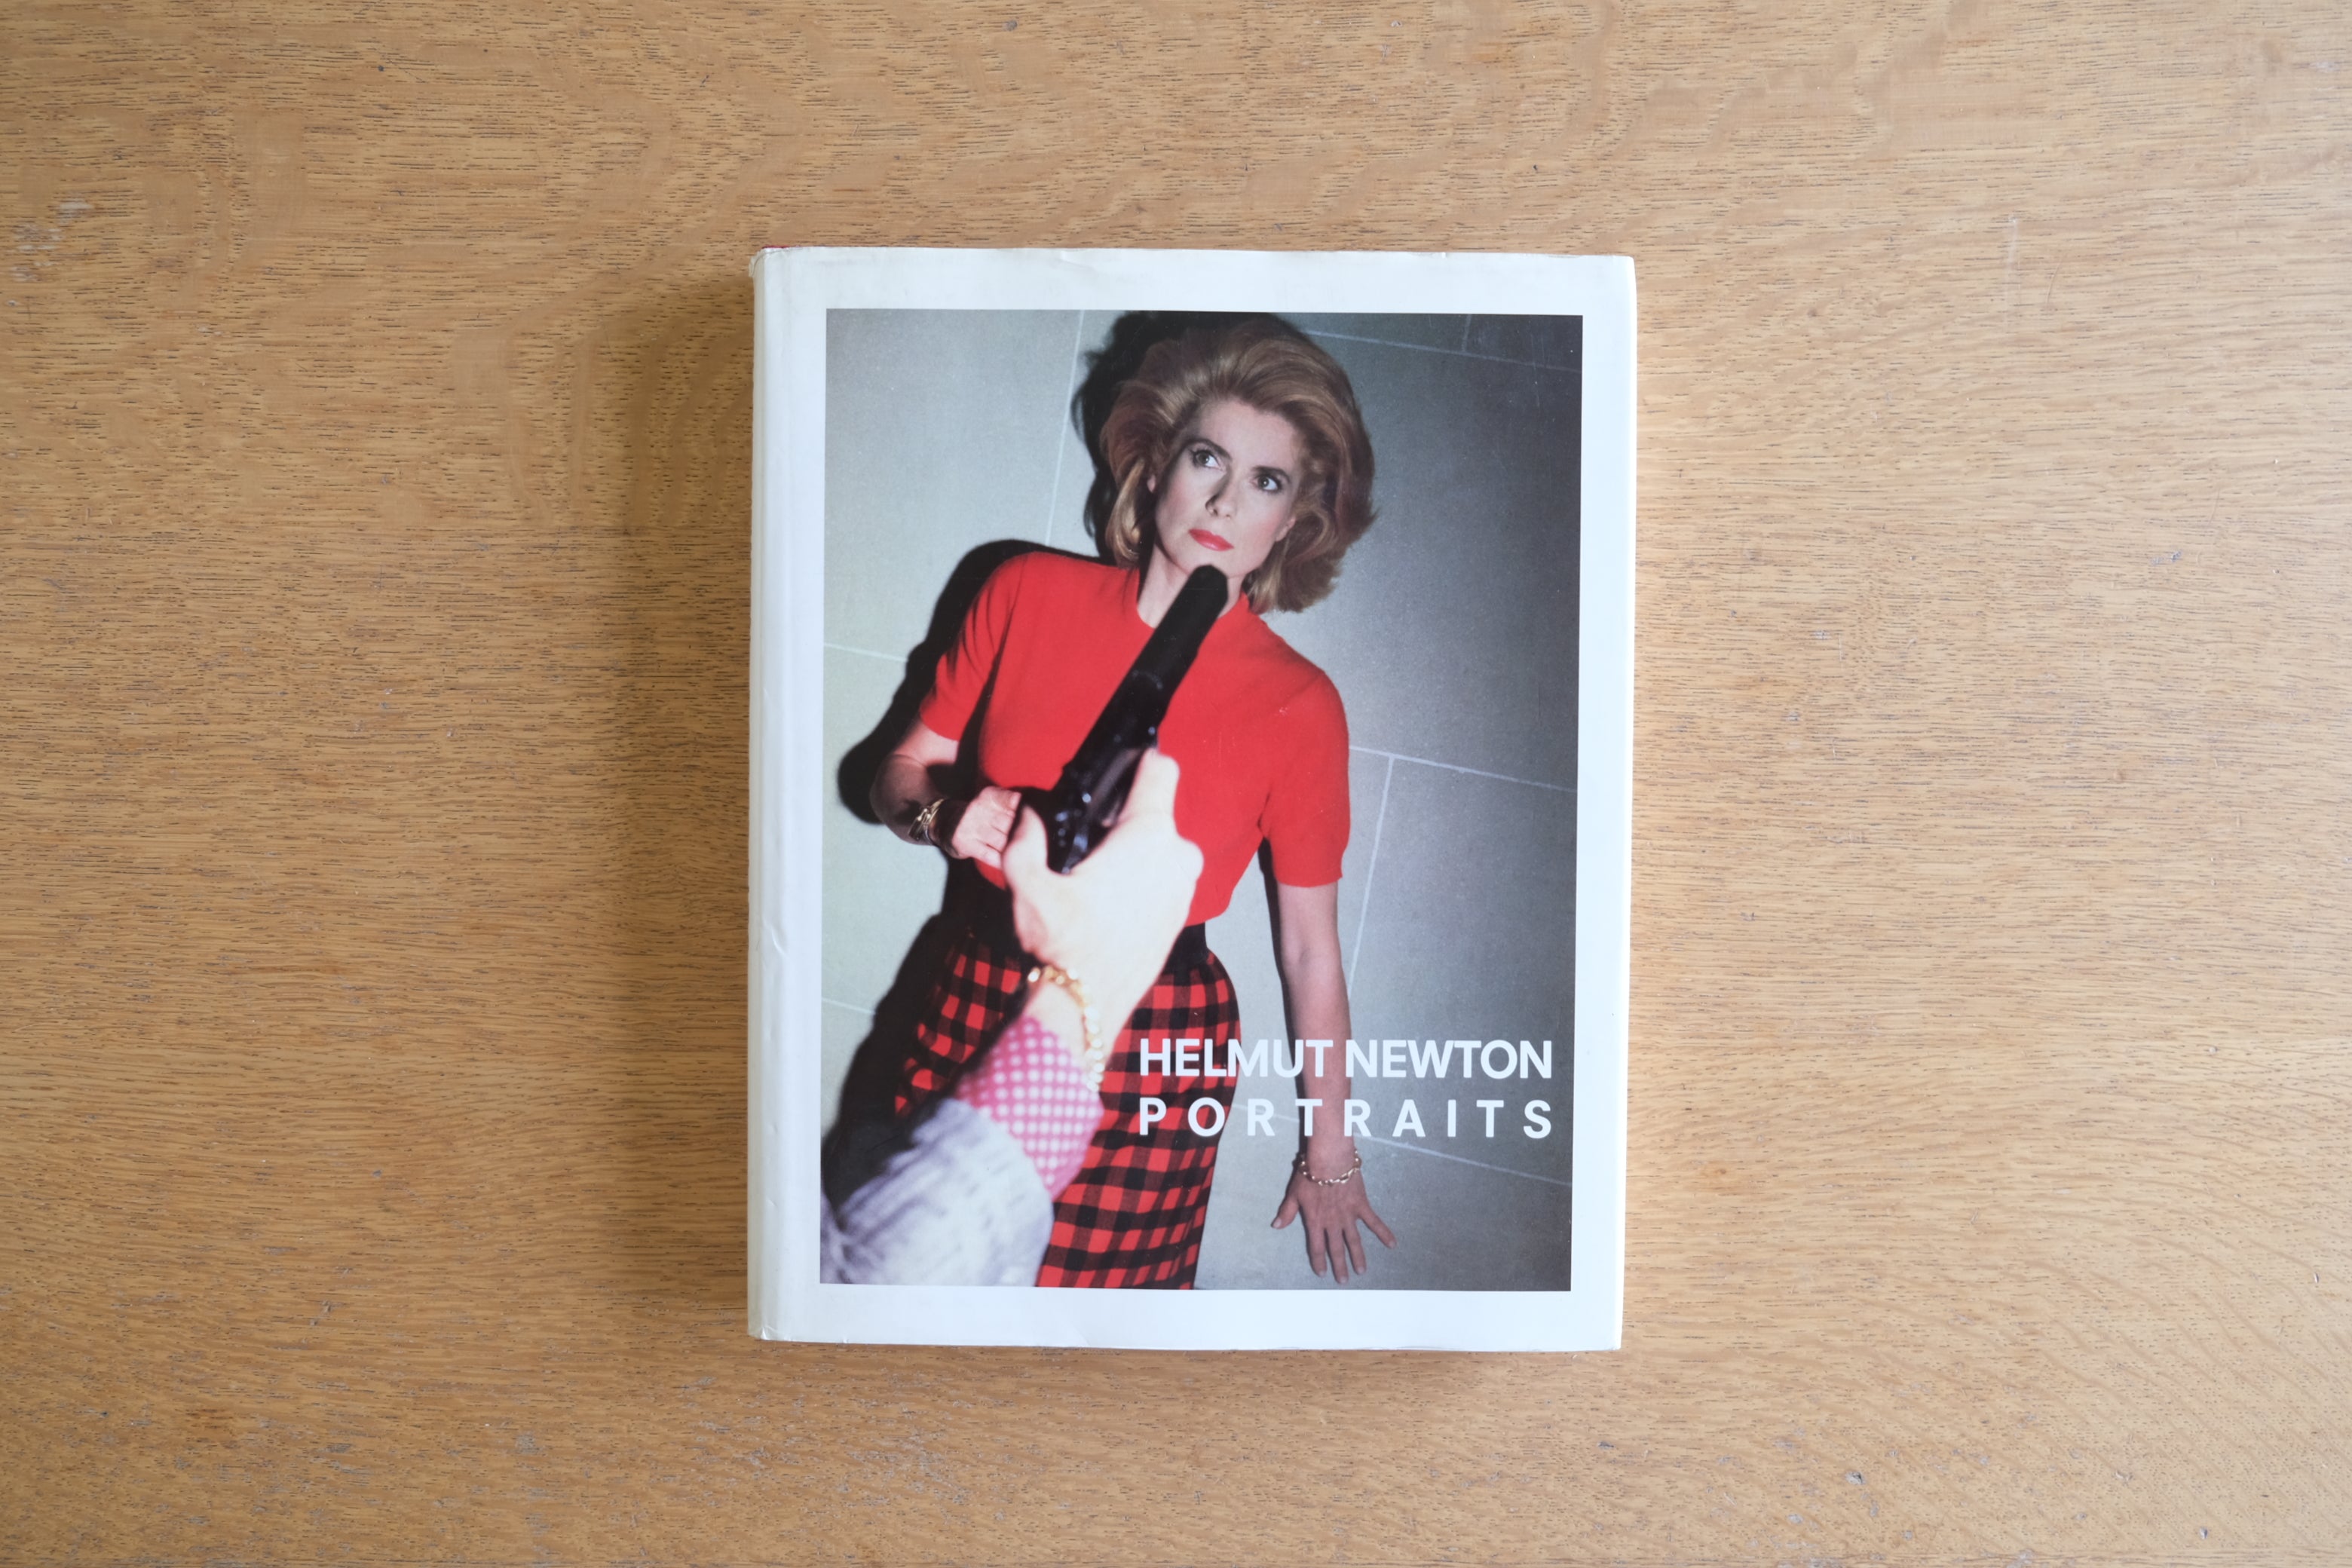 HELMUT NEWTON PORTRAITS 写真集 ヘルムート・ニュートン ファッション写真の巨匠 ポートレート集 – Helvetica